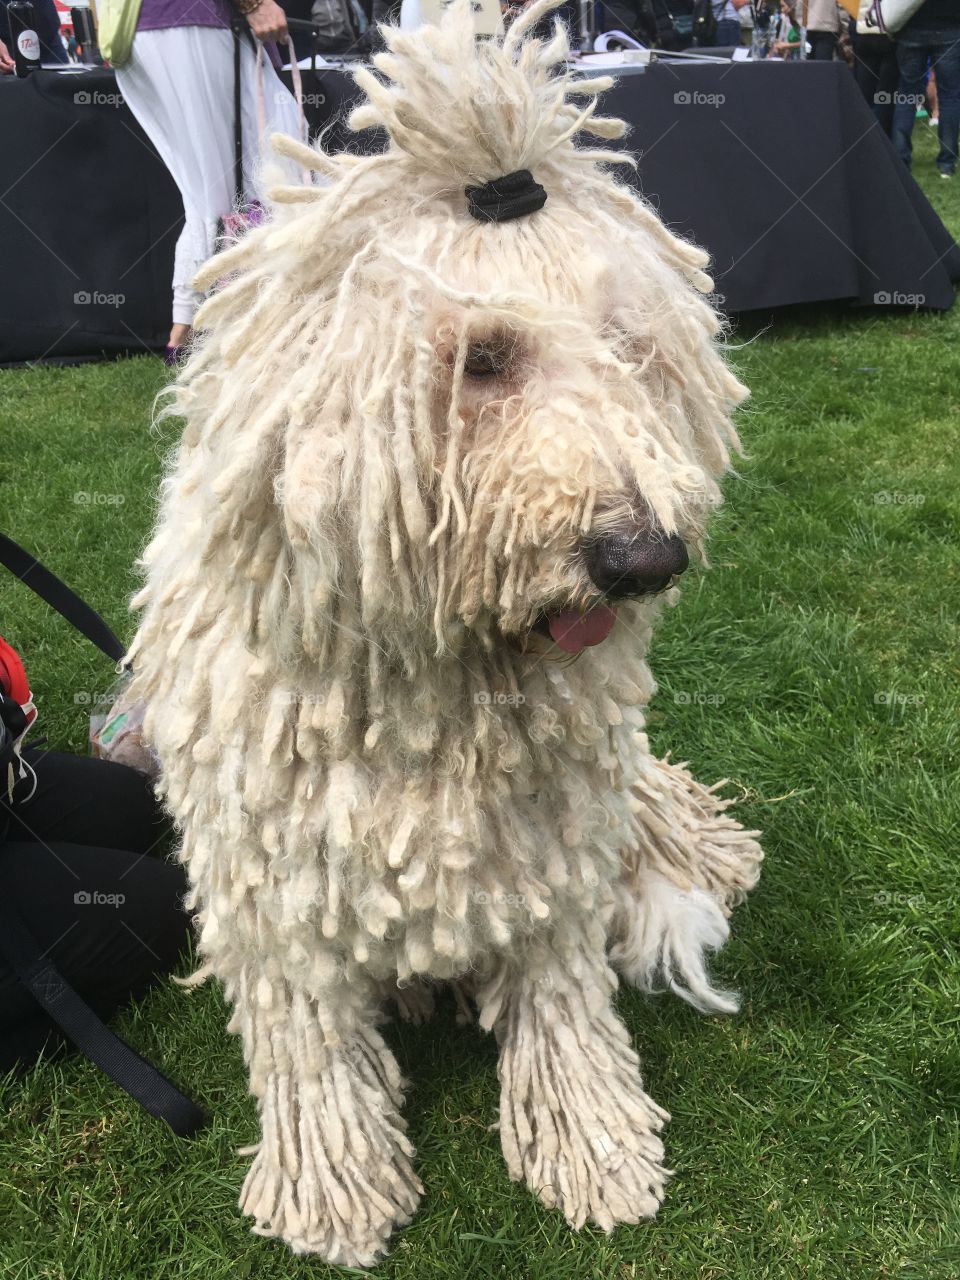 Dog show dog on green grass